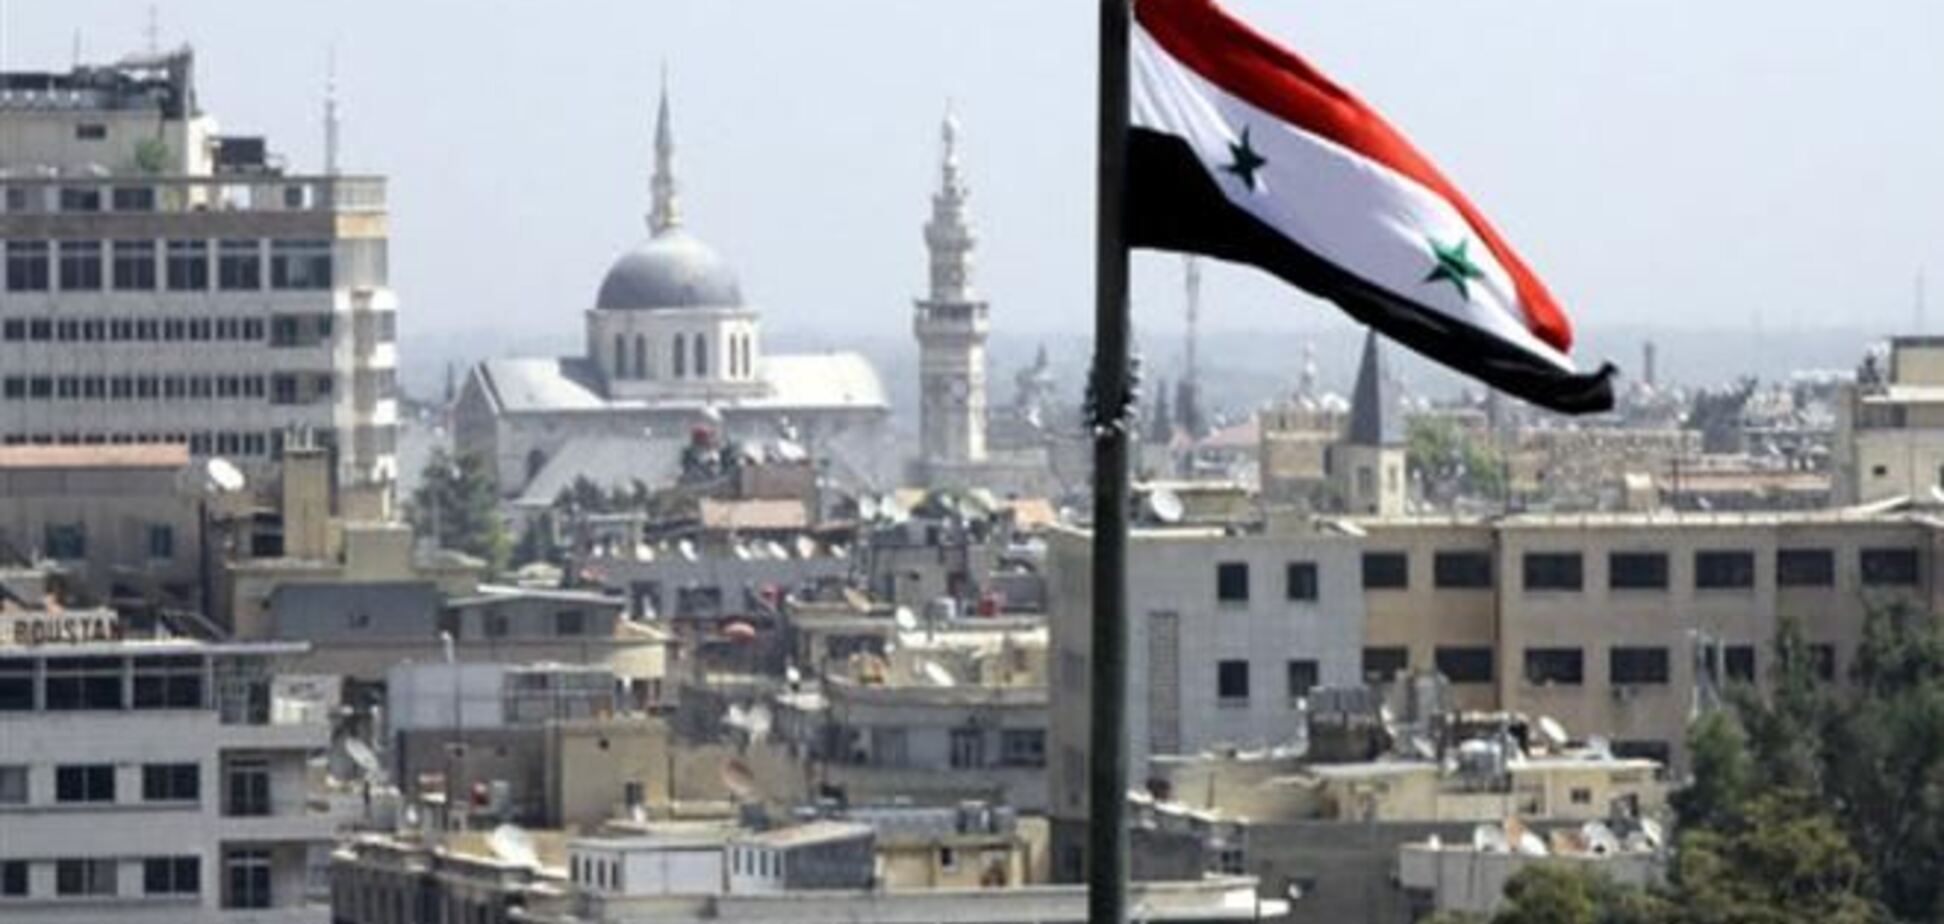 Сирия предоставила дополнительную информацию по химоружию